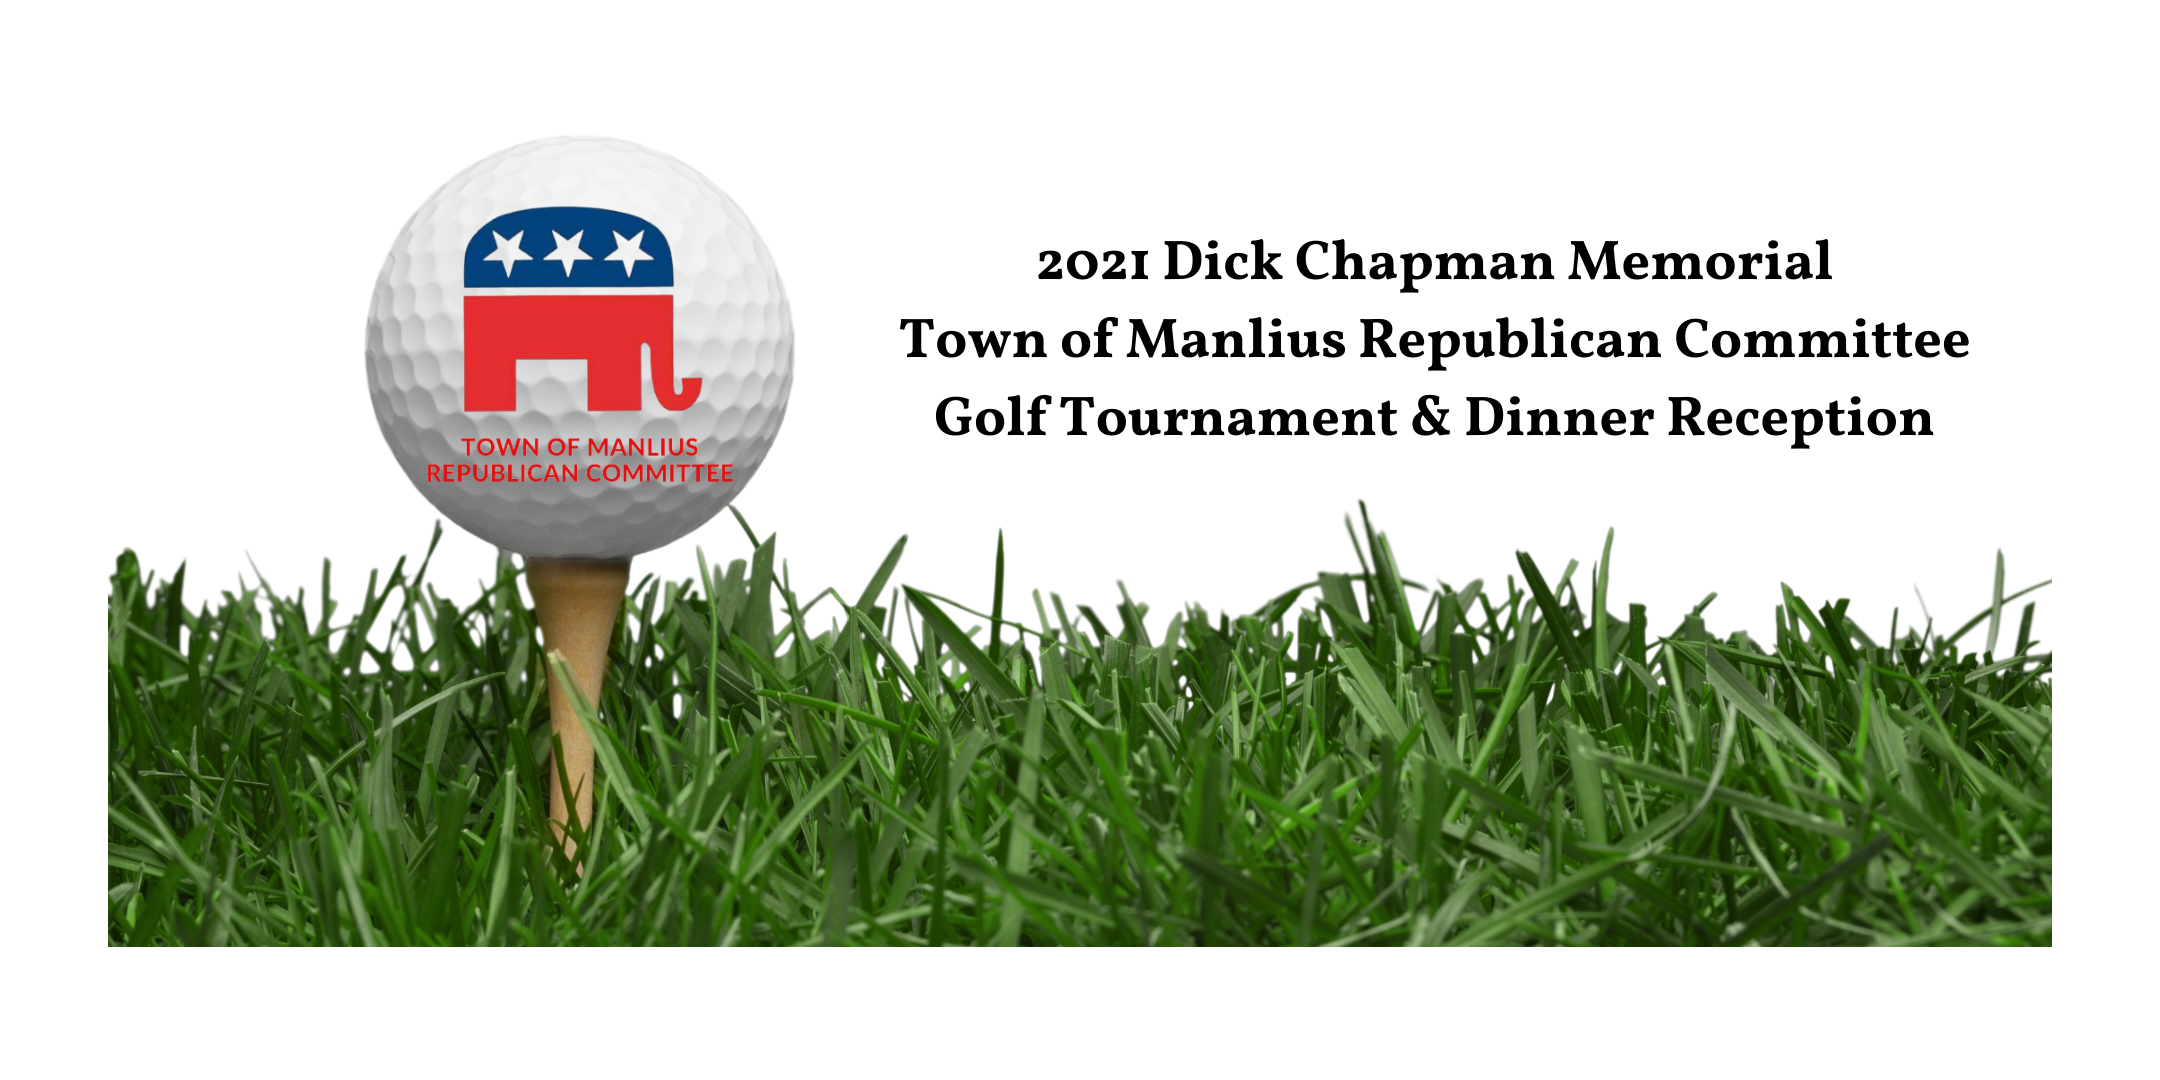 2021 Dick Chapman Memorial Golf Tournament & Dinner Reception